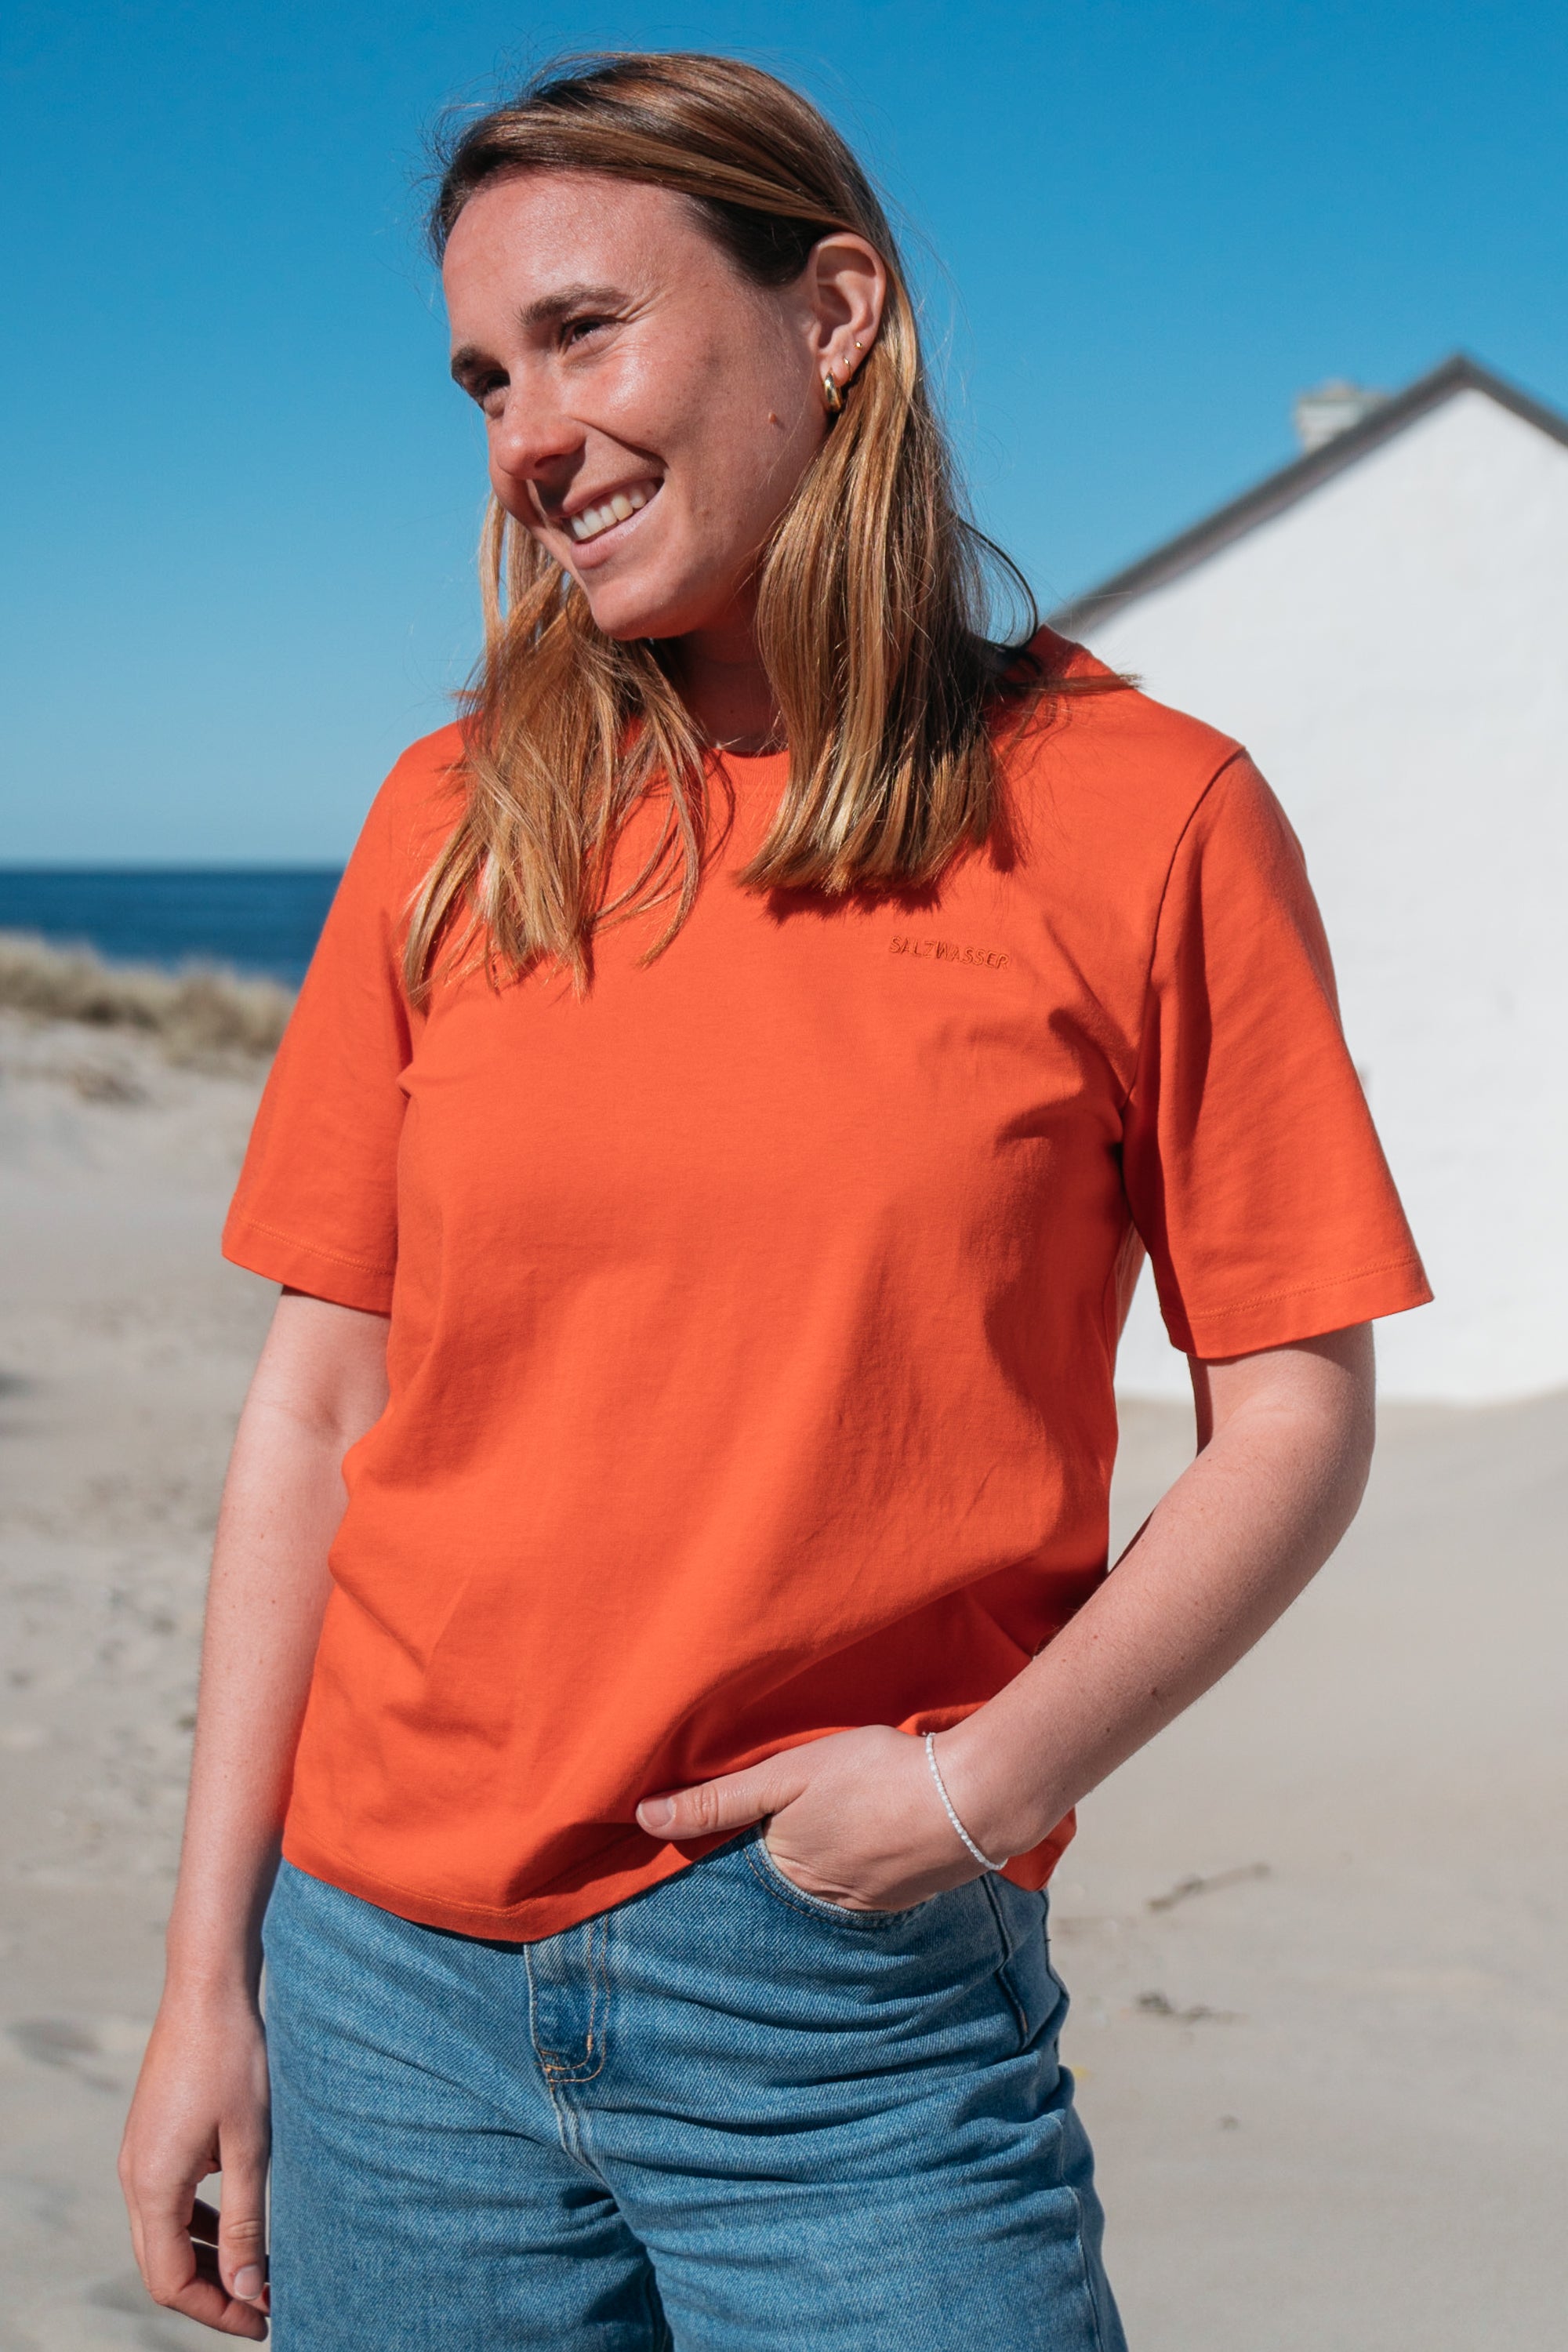 T-shirt Lova Orange en coton biologique de Salzwasser